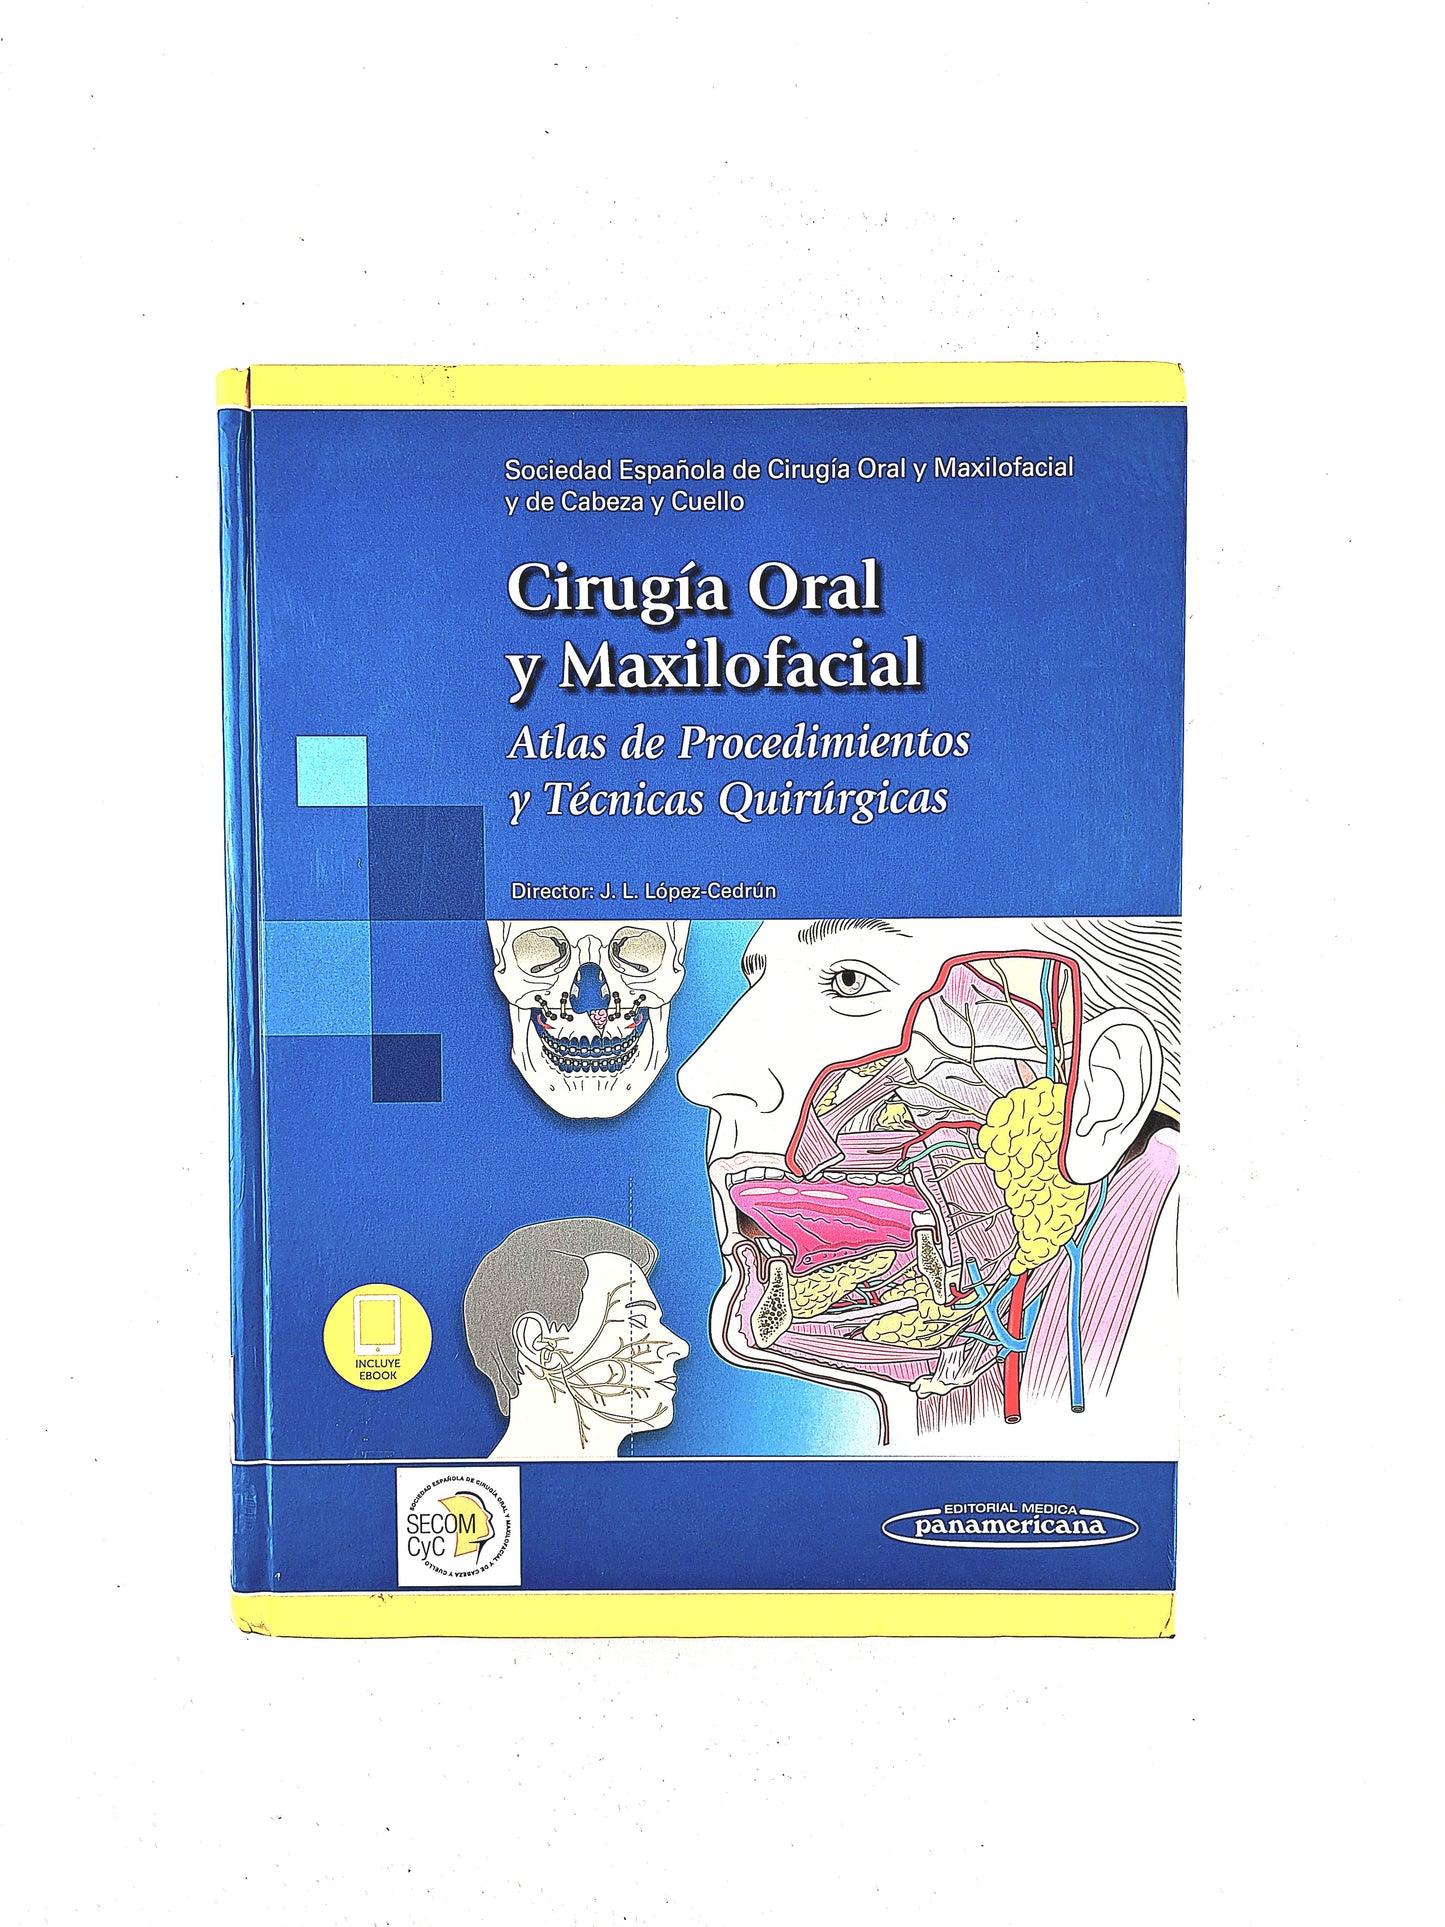 Cirugía Oral y Maxilofacial atlas de procedimientos y técnicas quirúrgicas